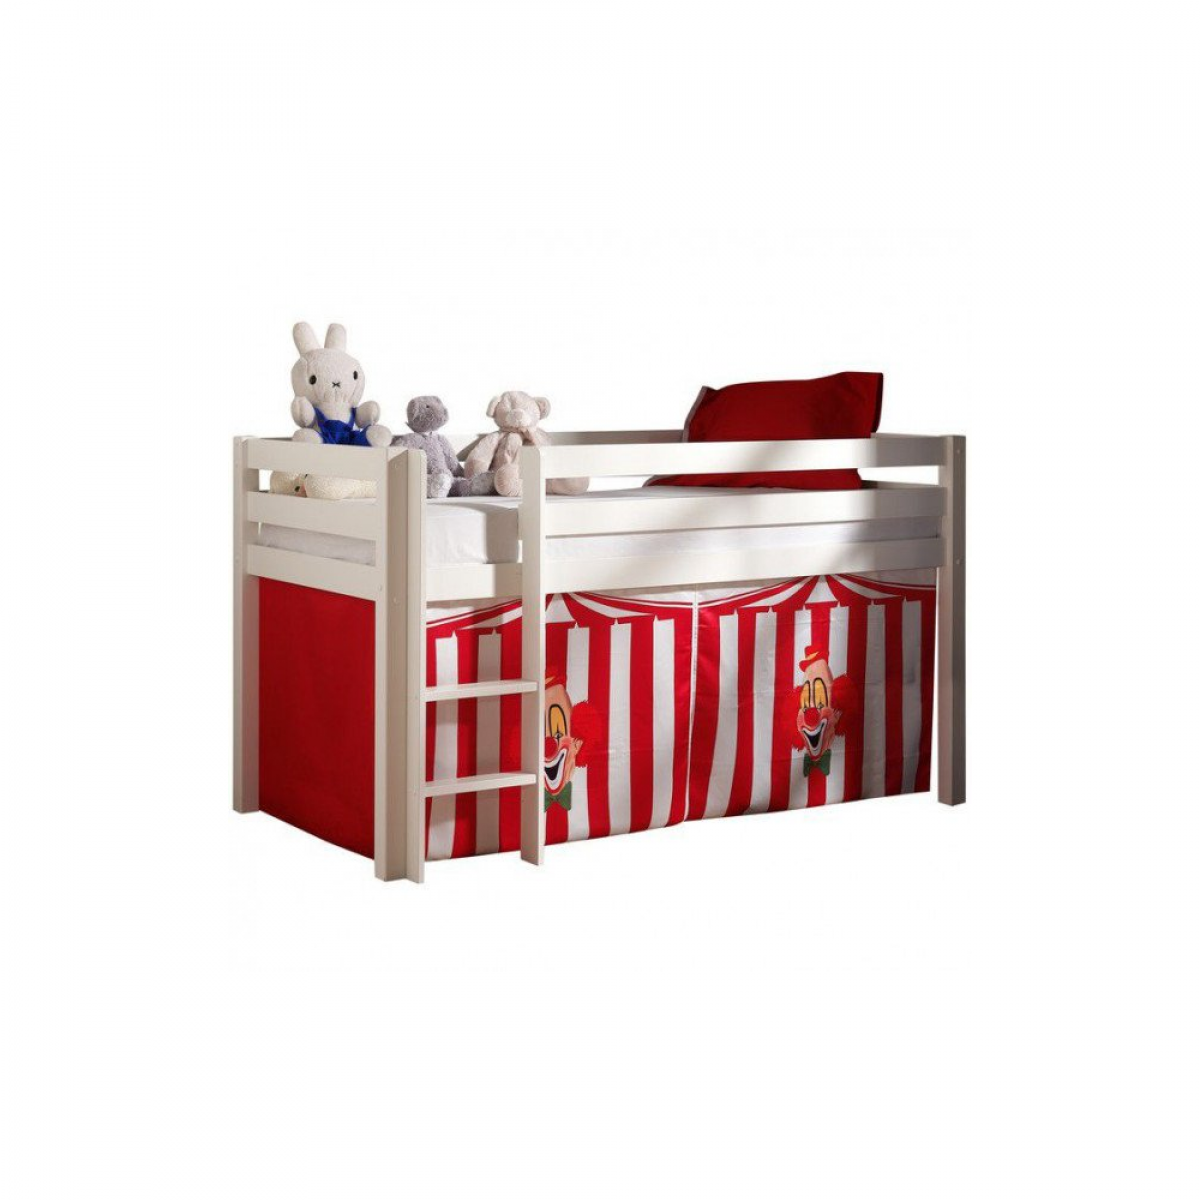 Meubles Thiry Textile Piny design cirque rouge et blanc pour lit surélevé